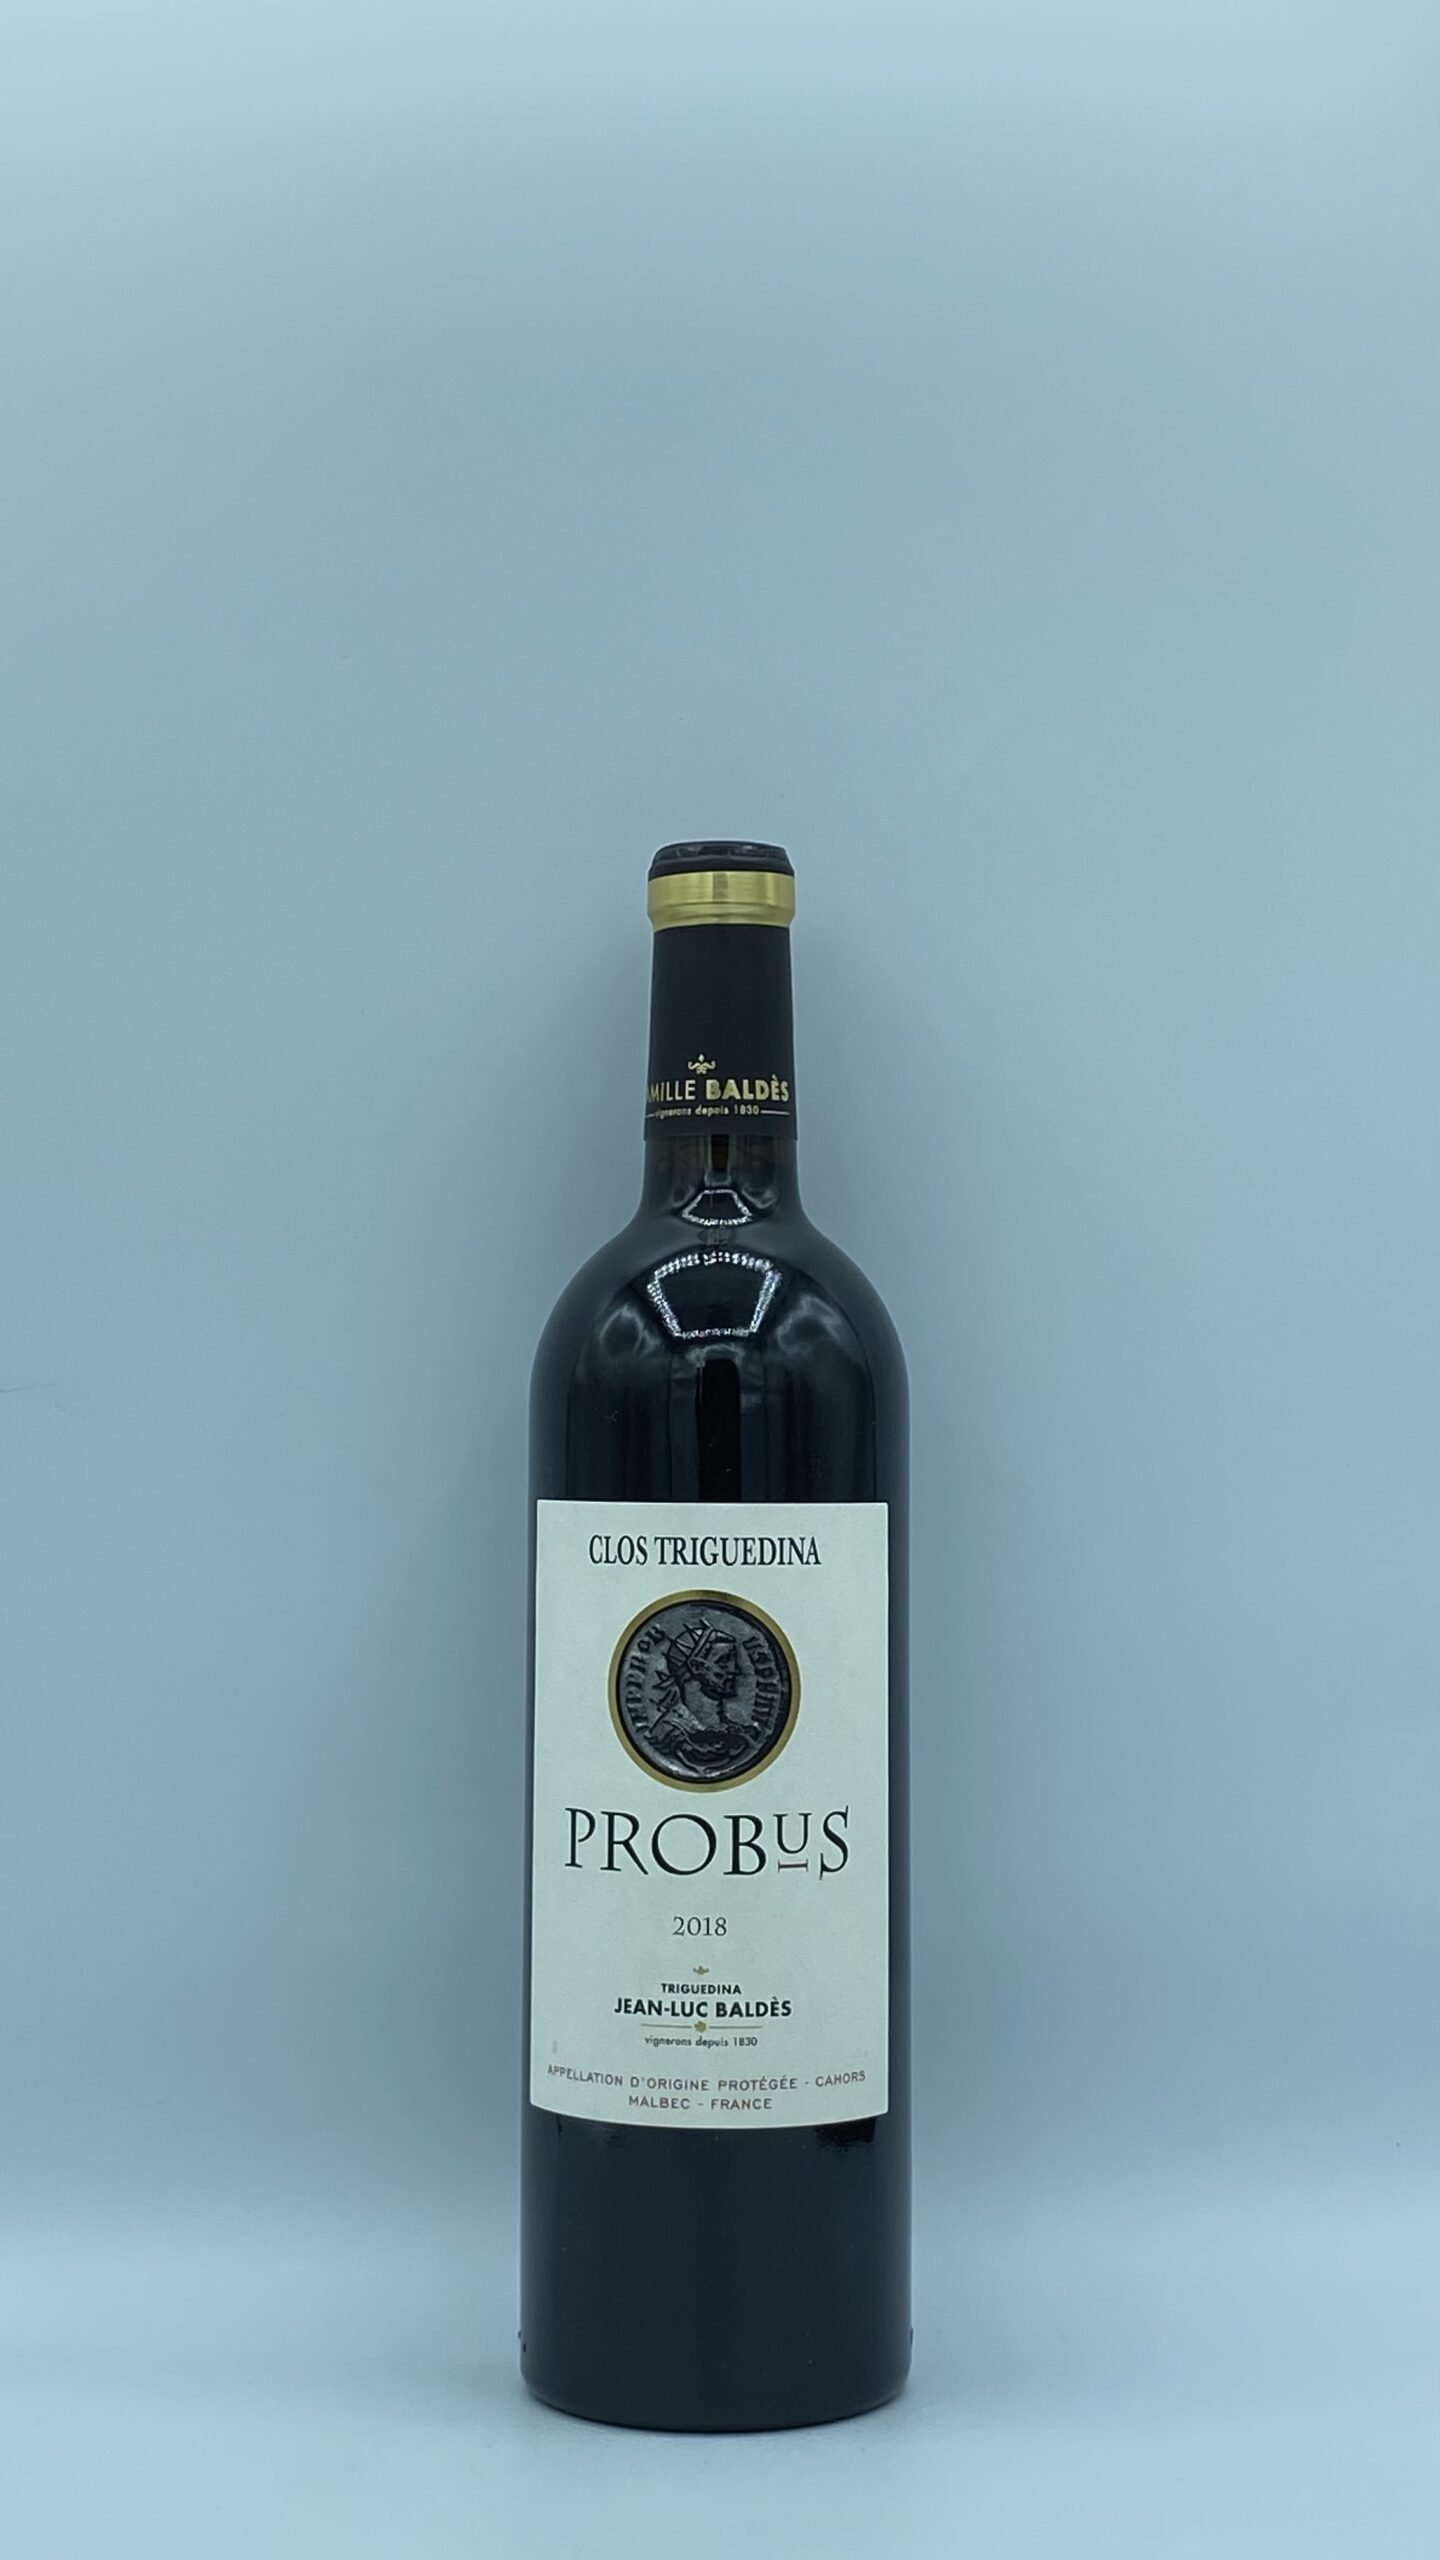 Cahors “Probus” 2018 Clos Triguedina